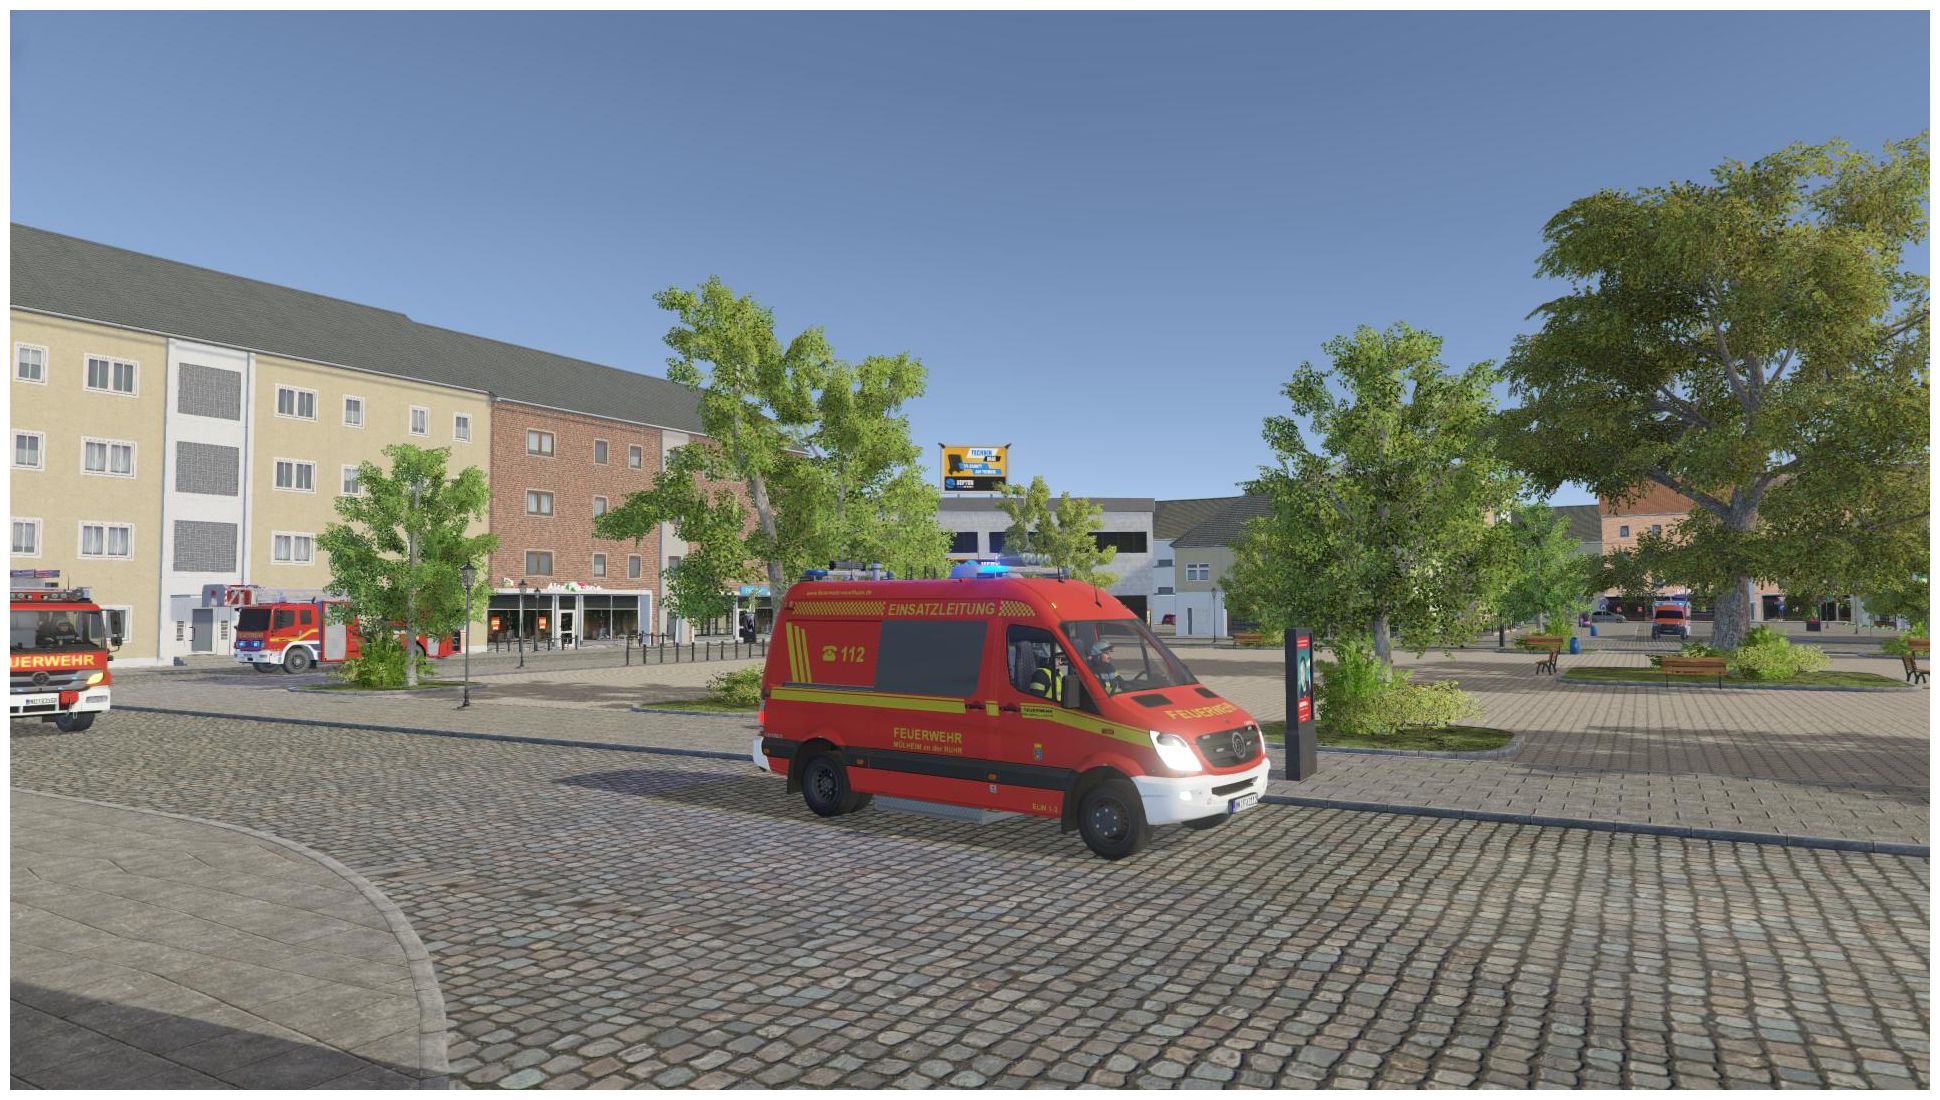 tronic von Feuerwehr Simulation 112: (PC) Notruf ak Technomarkt expert Die